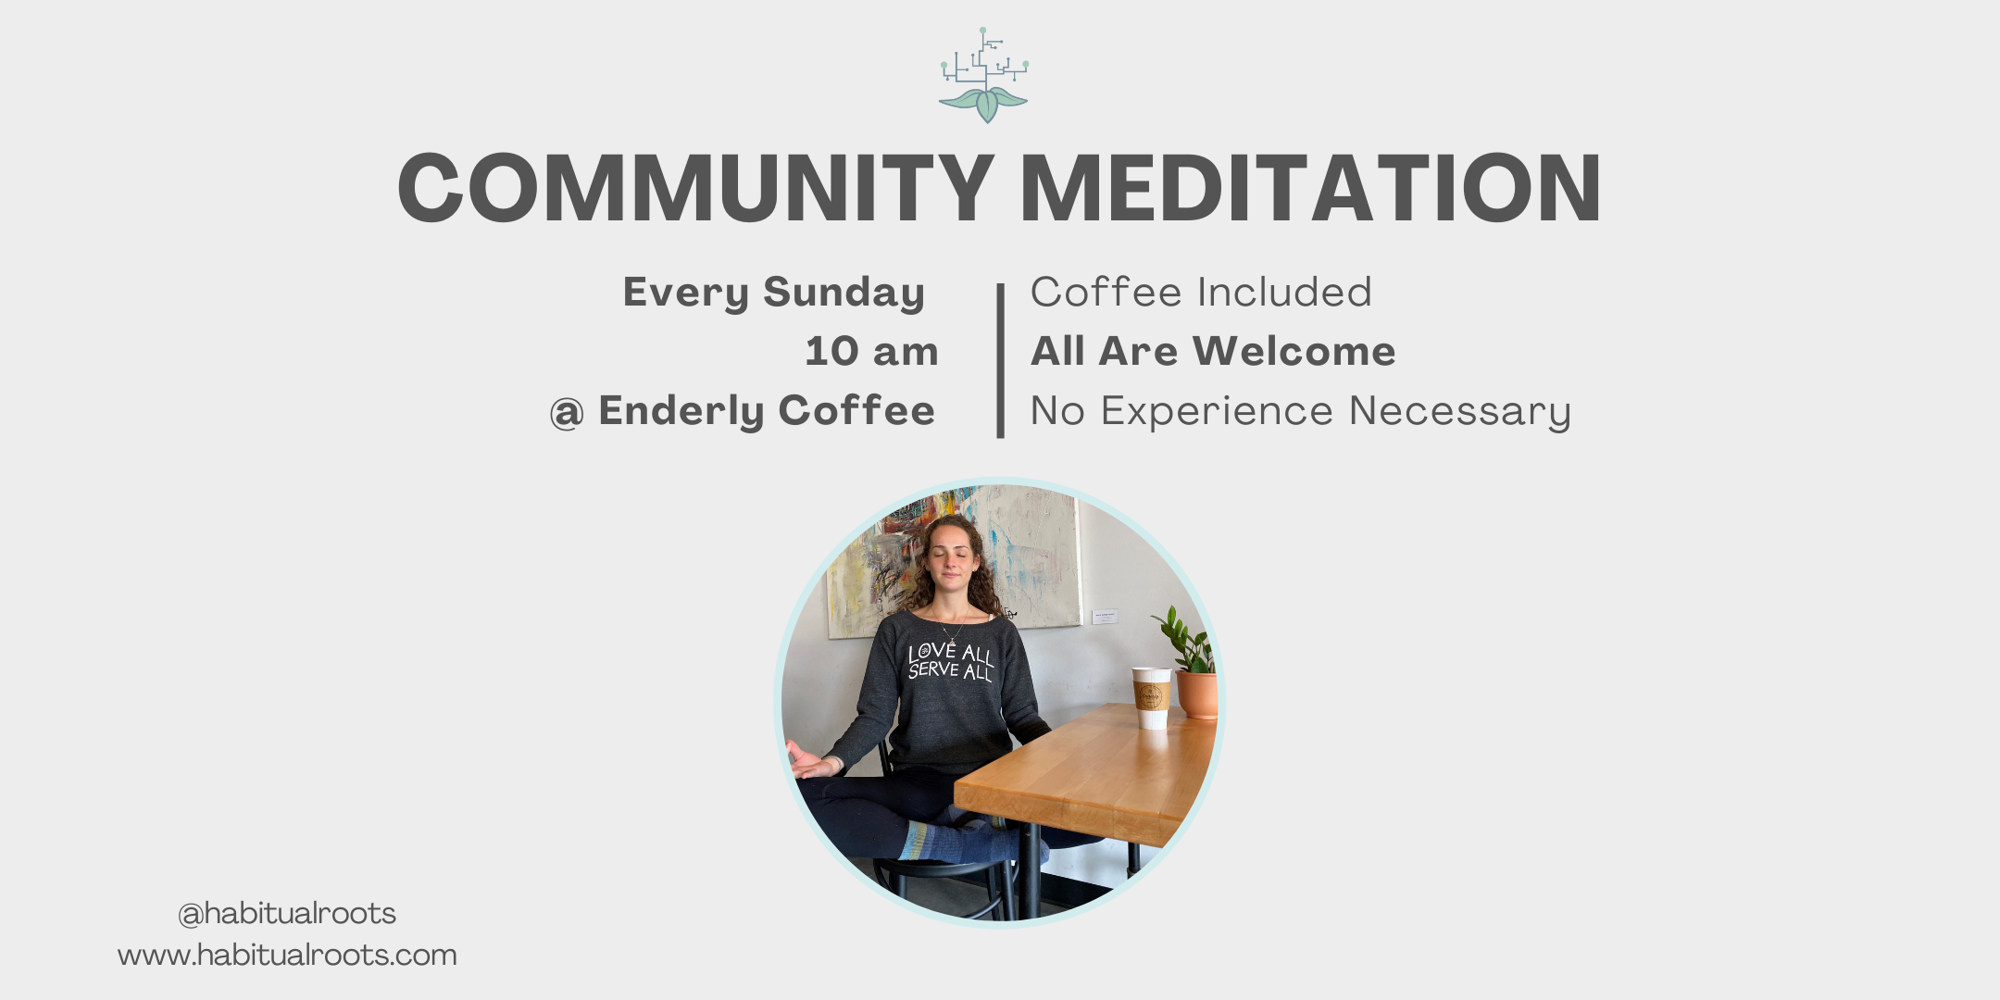 Community Meditation  promotional image